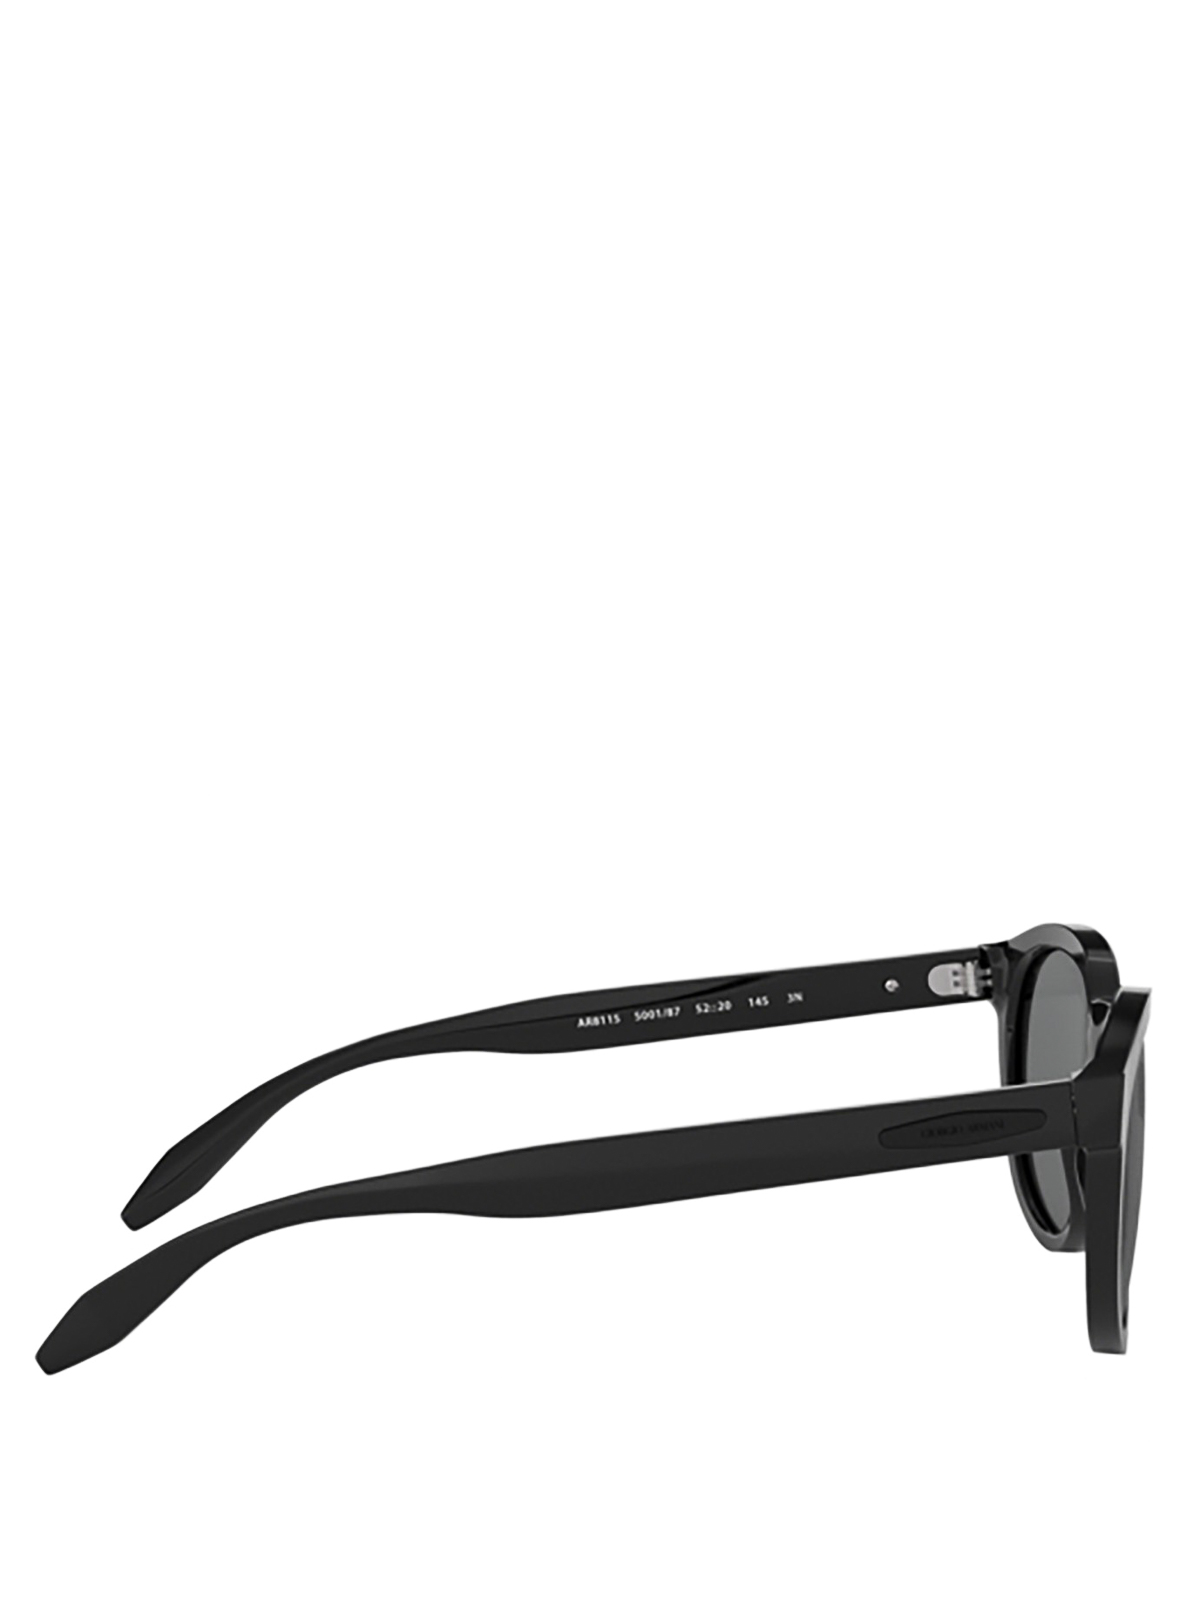 giorgio armani black sunglasses